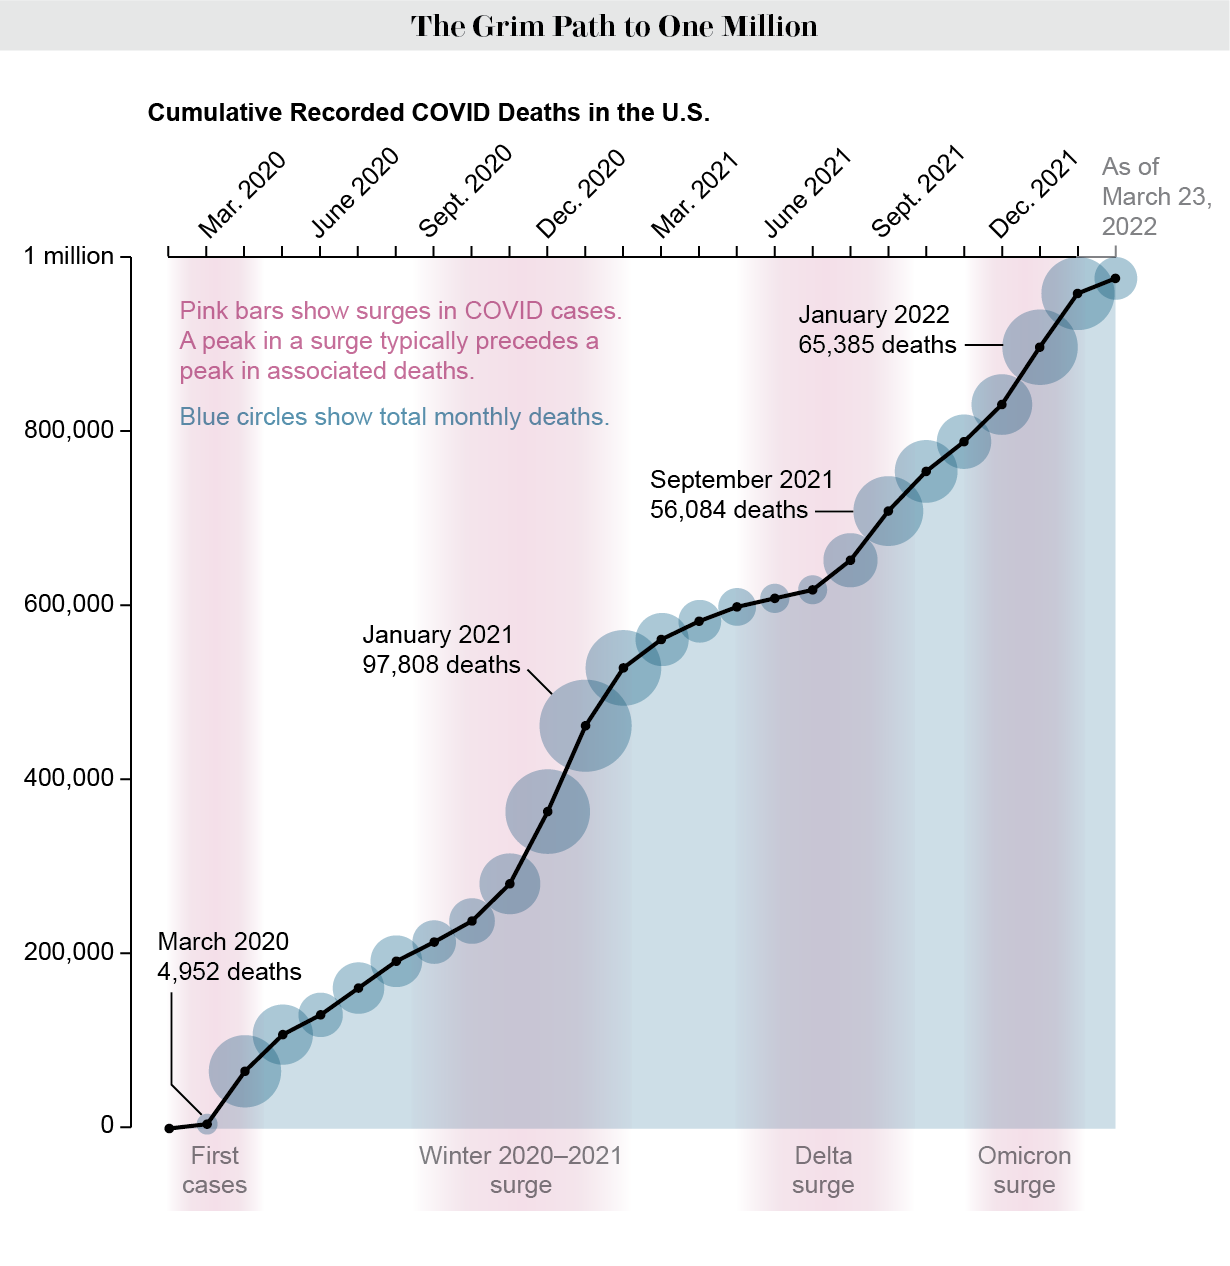 Графиката показва кумулативните регистрирани смъртни случаи от COVID в САЩ от февруари 2020 г., като общият брой достига почти един милион.